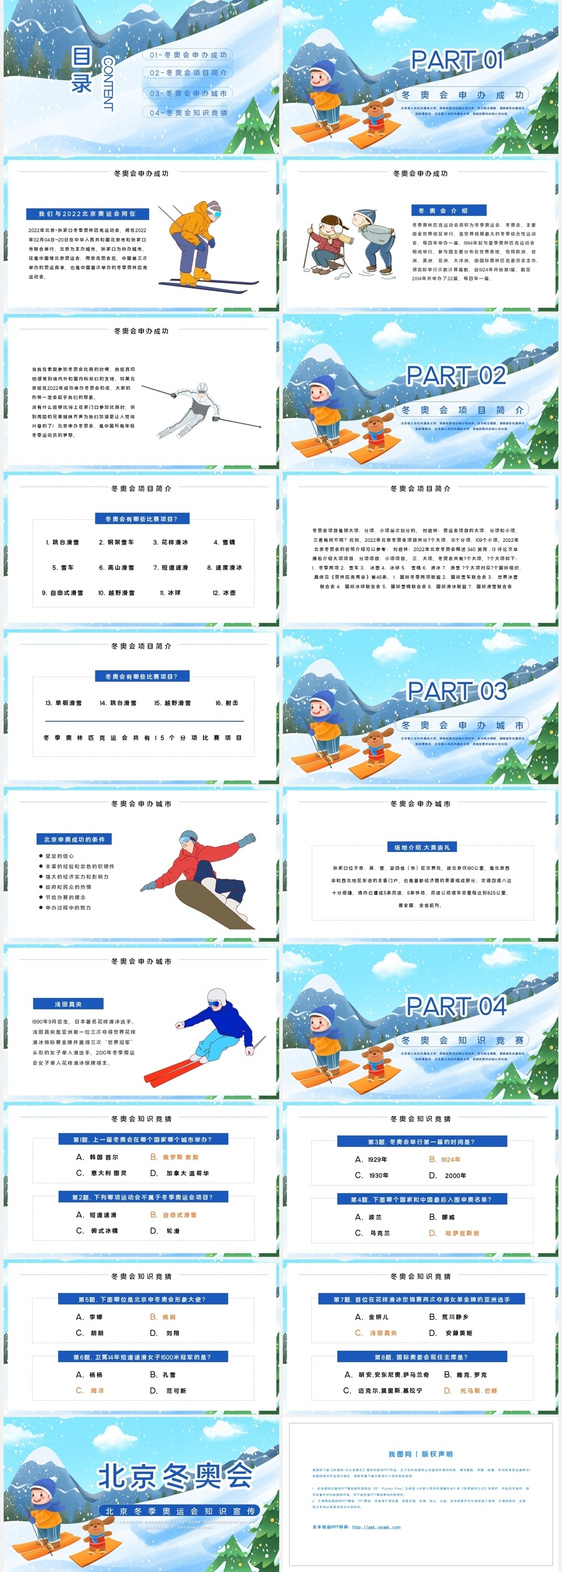 蓝色卡通风北京冬季奥运会知识宣传PPT模板